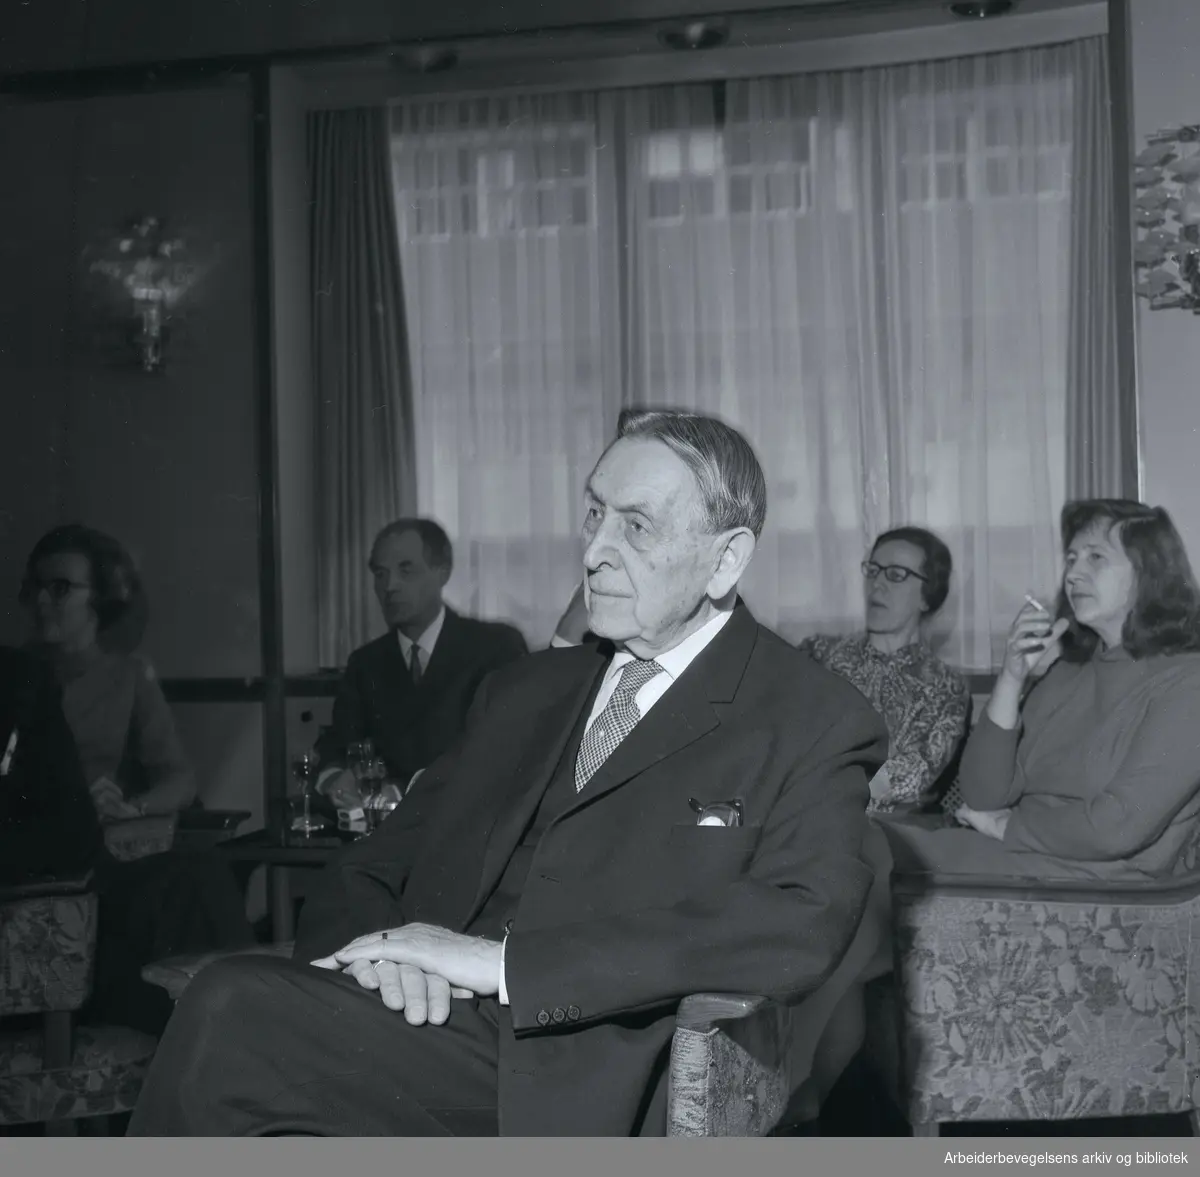 Francis Bull. 1887-1974. Møte i Lytterforeningen. Datert 15 mars 1968. Bak til høyre: Anne Cath. Vestly.